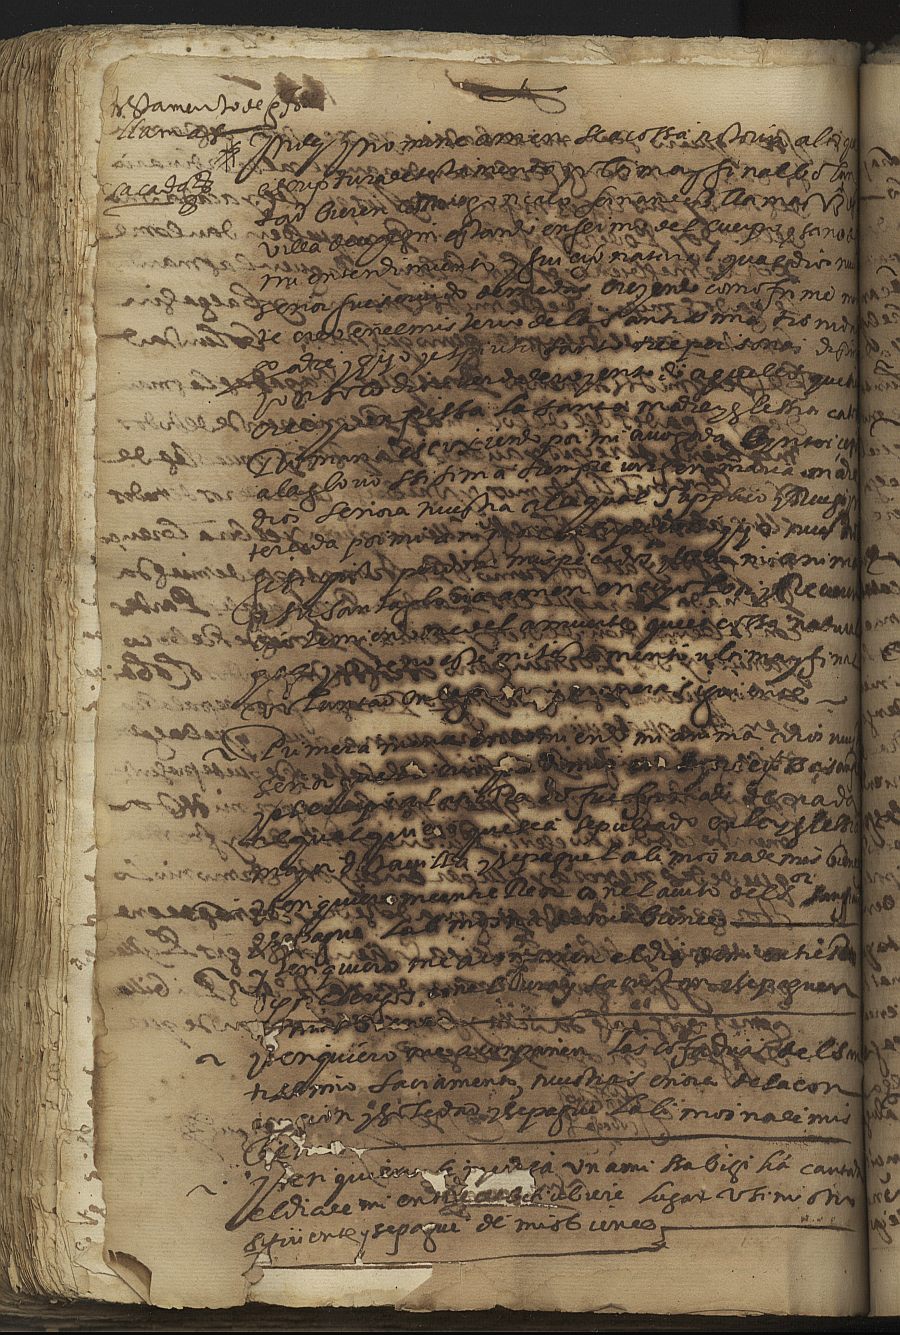 Testamento de Gonzalo Fernández Llamas, marido de Catalina de Octavio, vecinos de Cehegín.